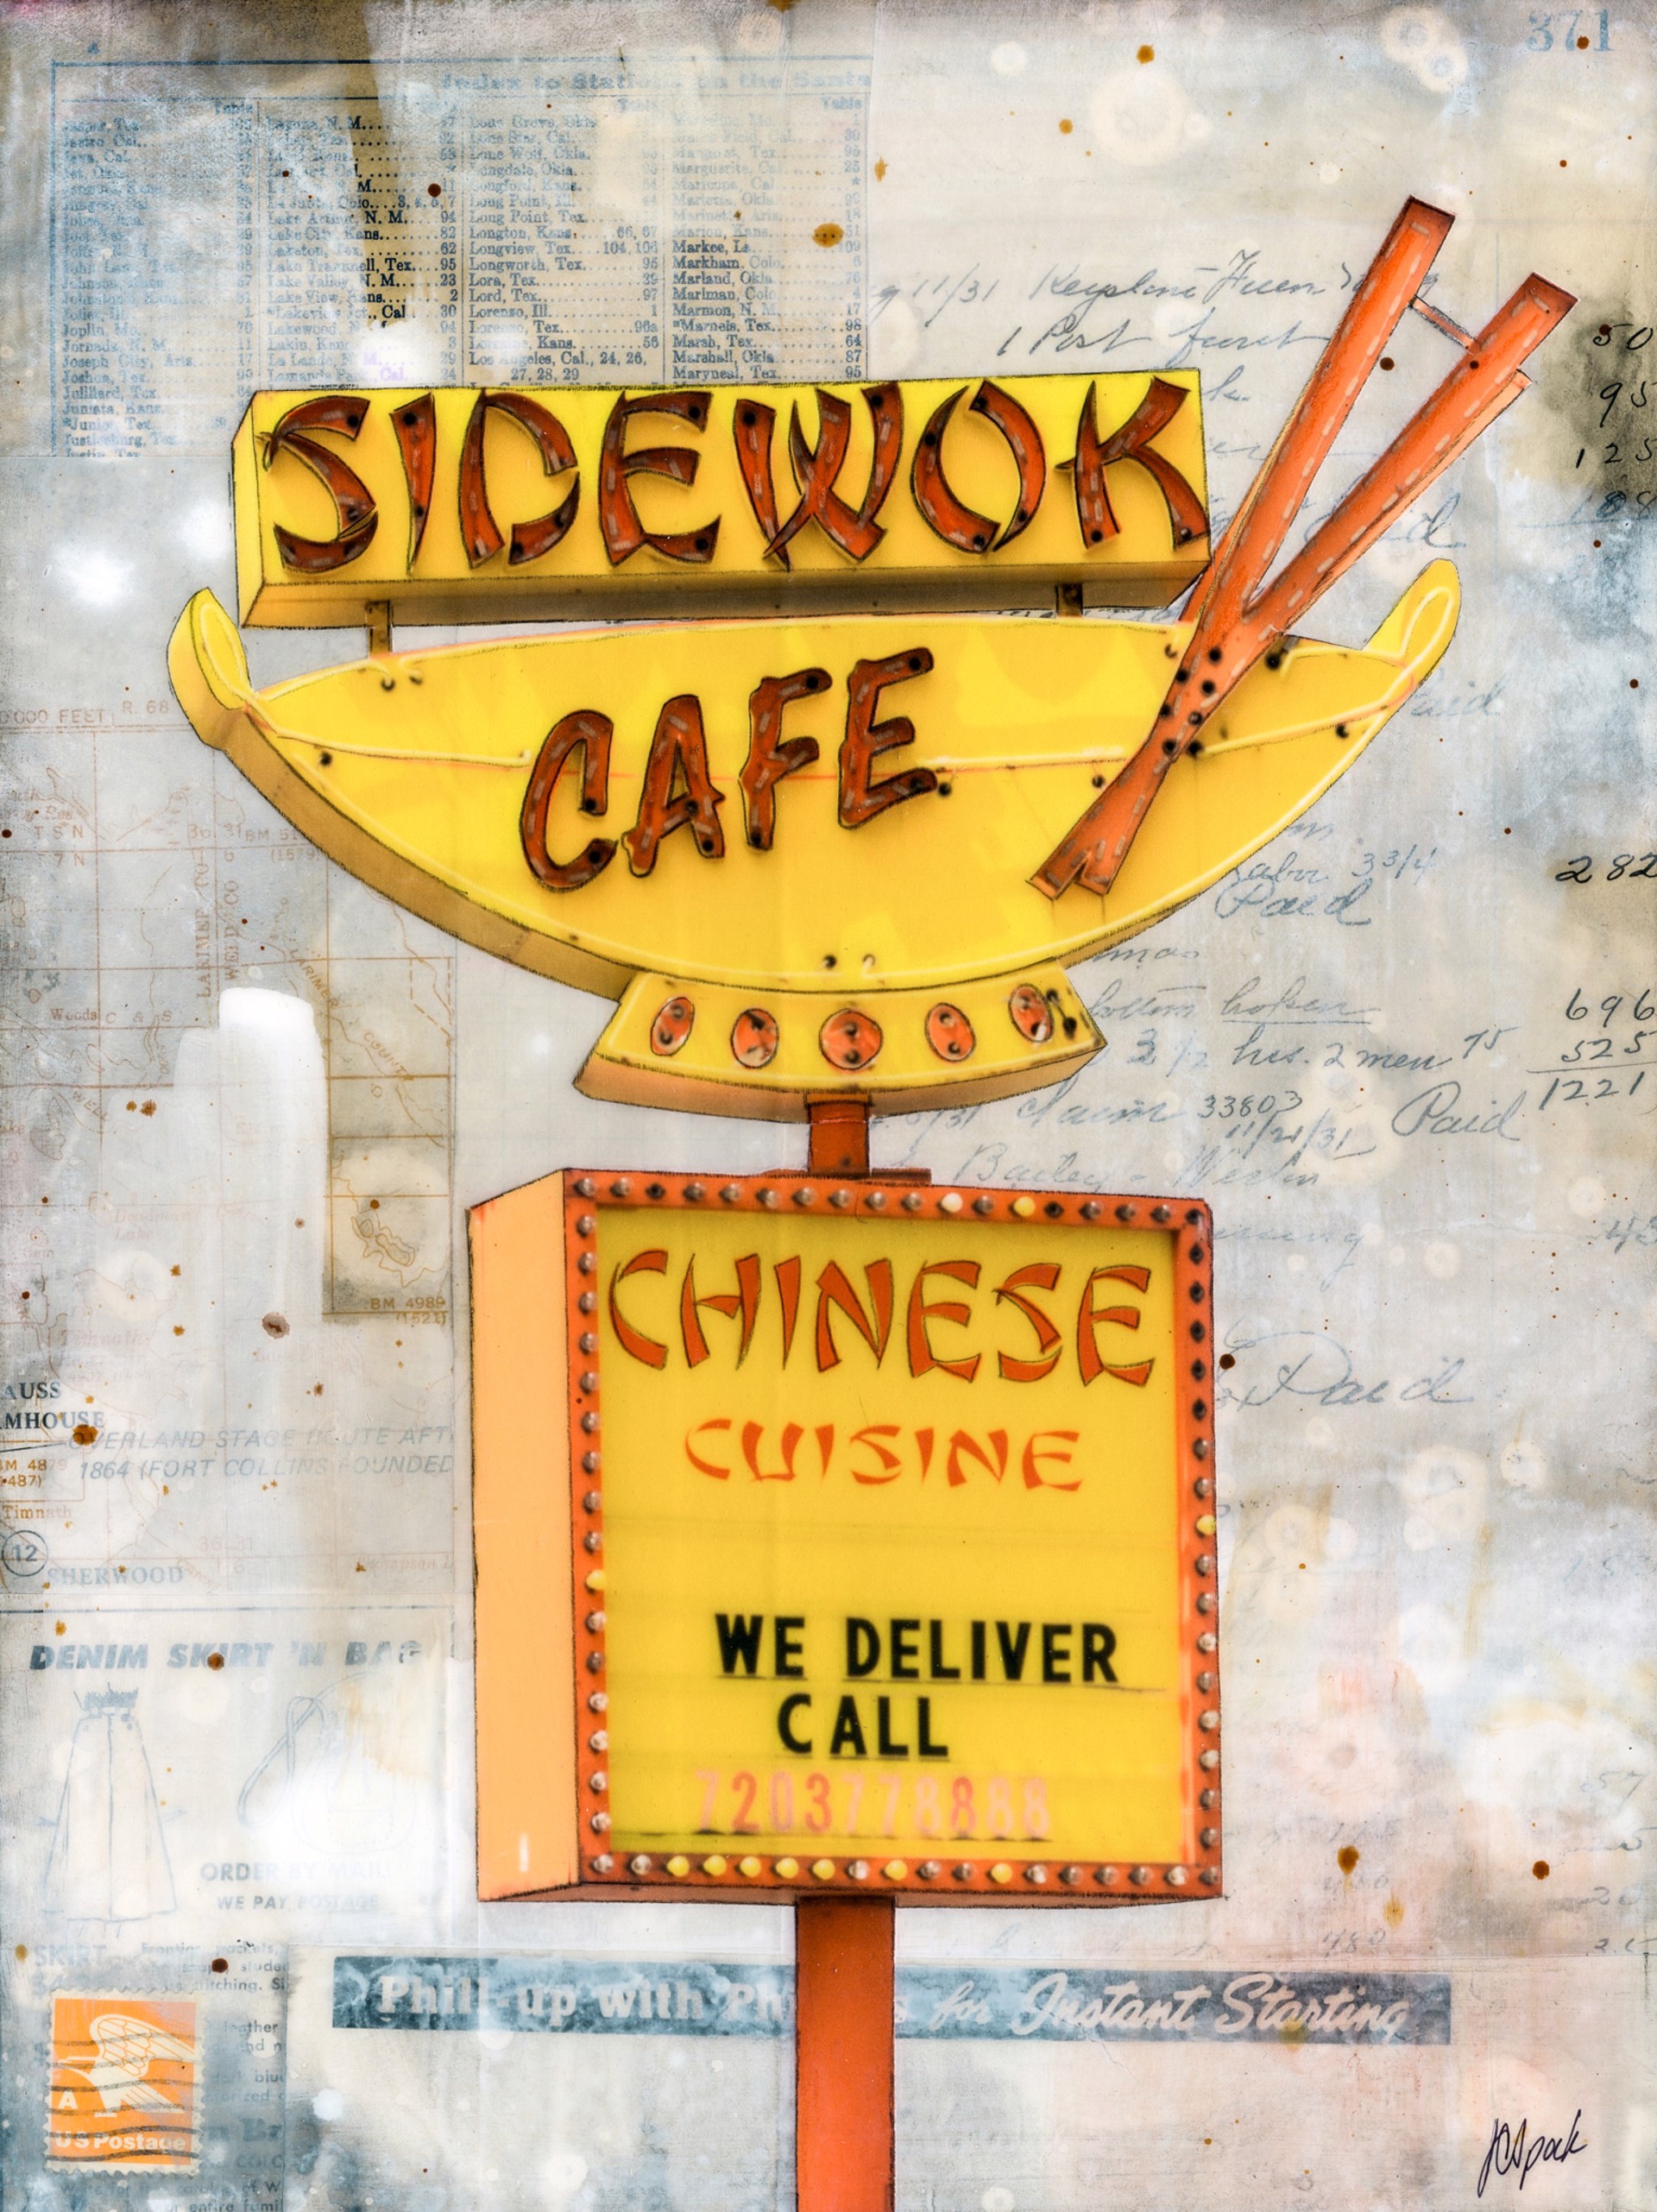 Sidewok Cafe by JC Spock